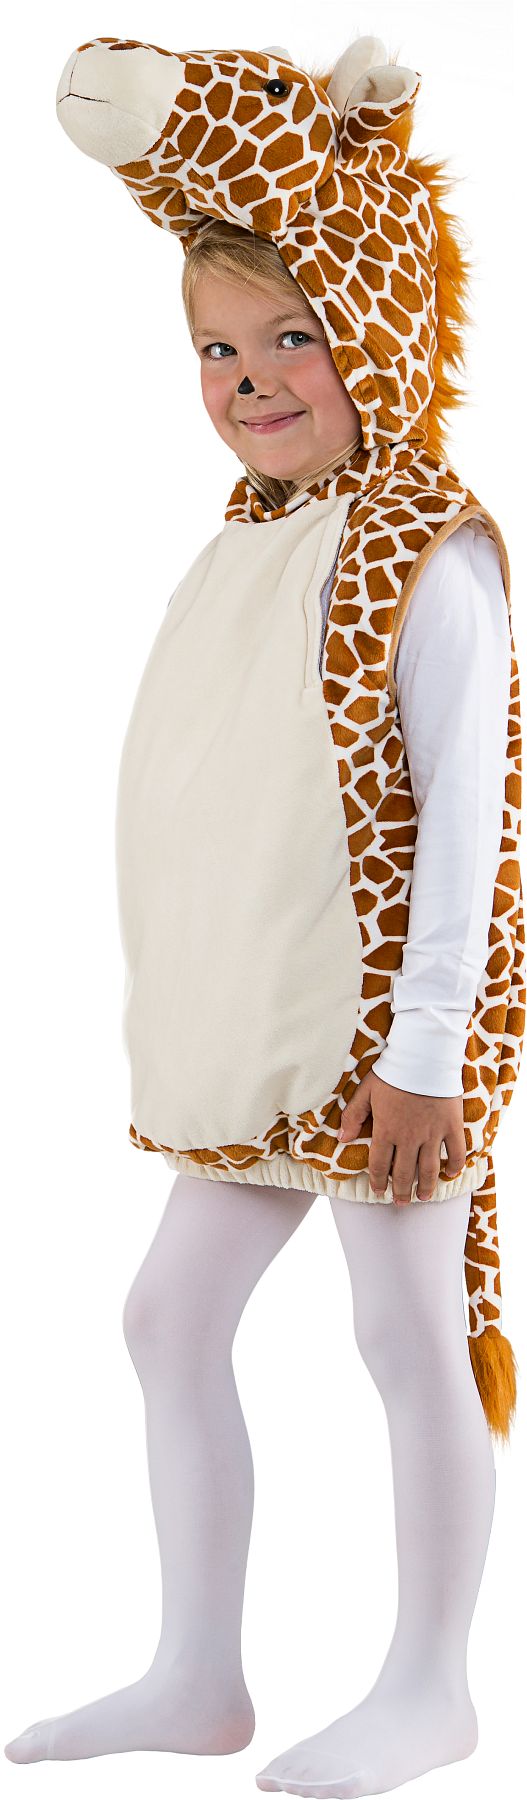 Giraffe vest